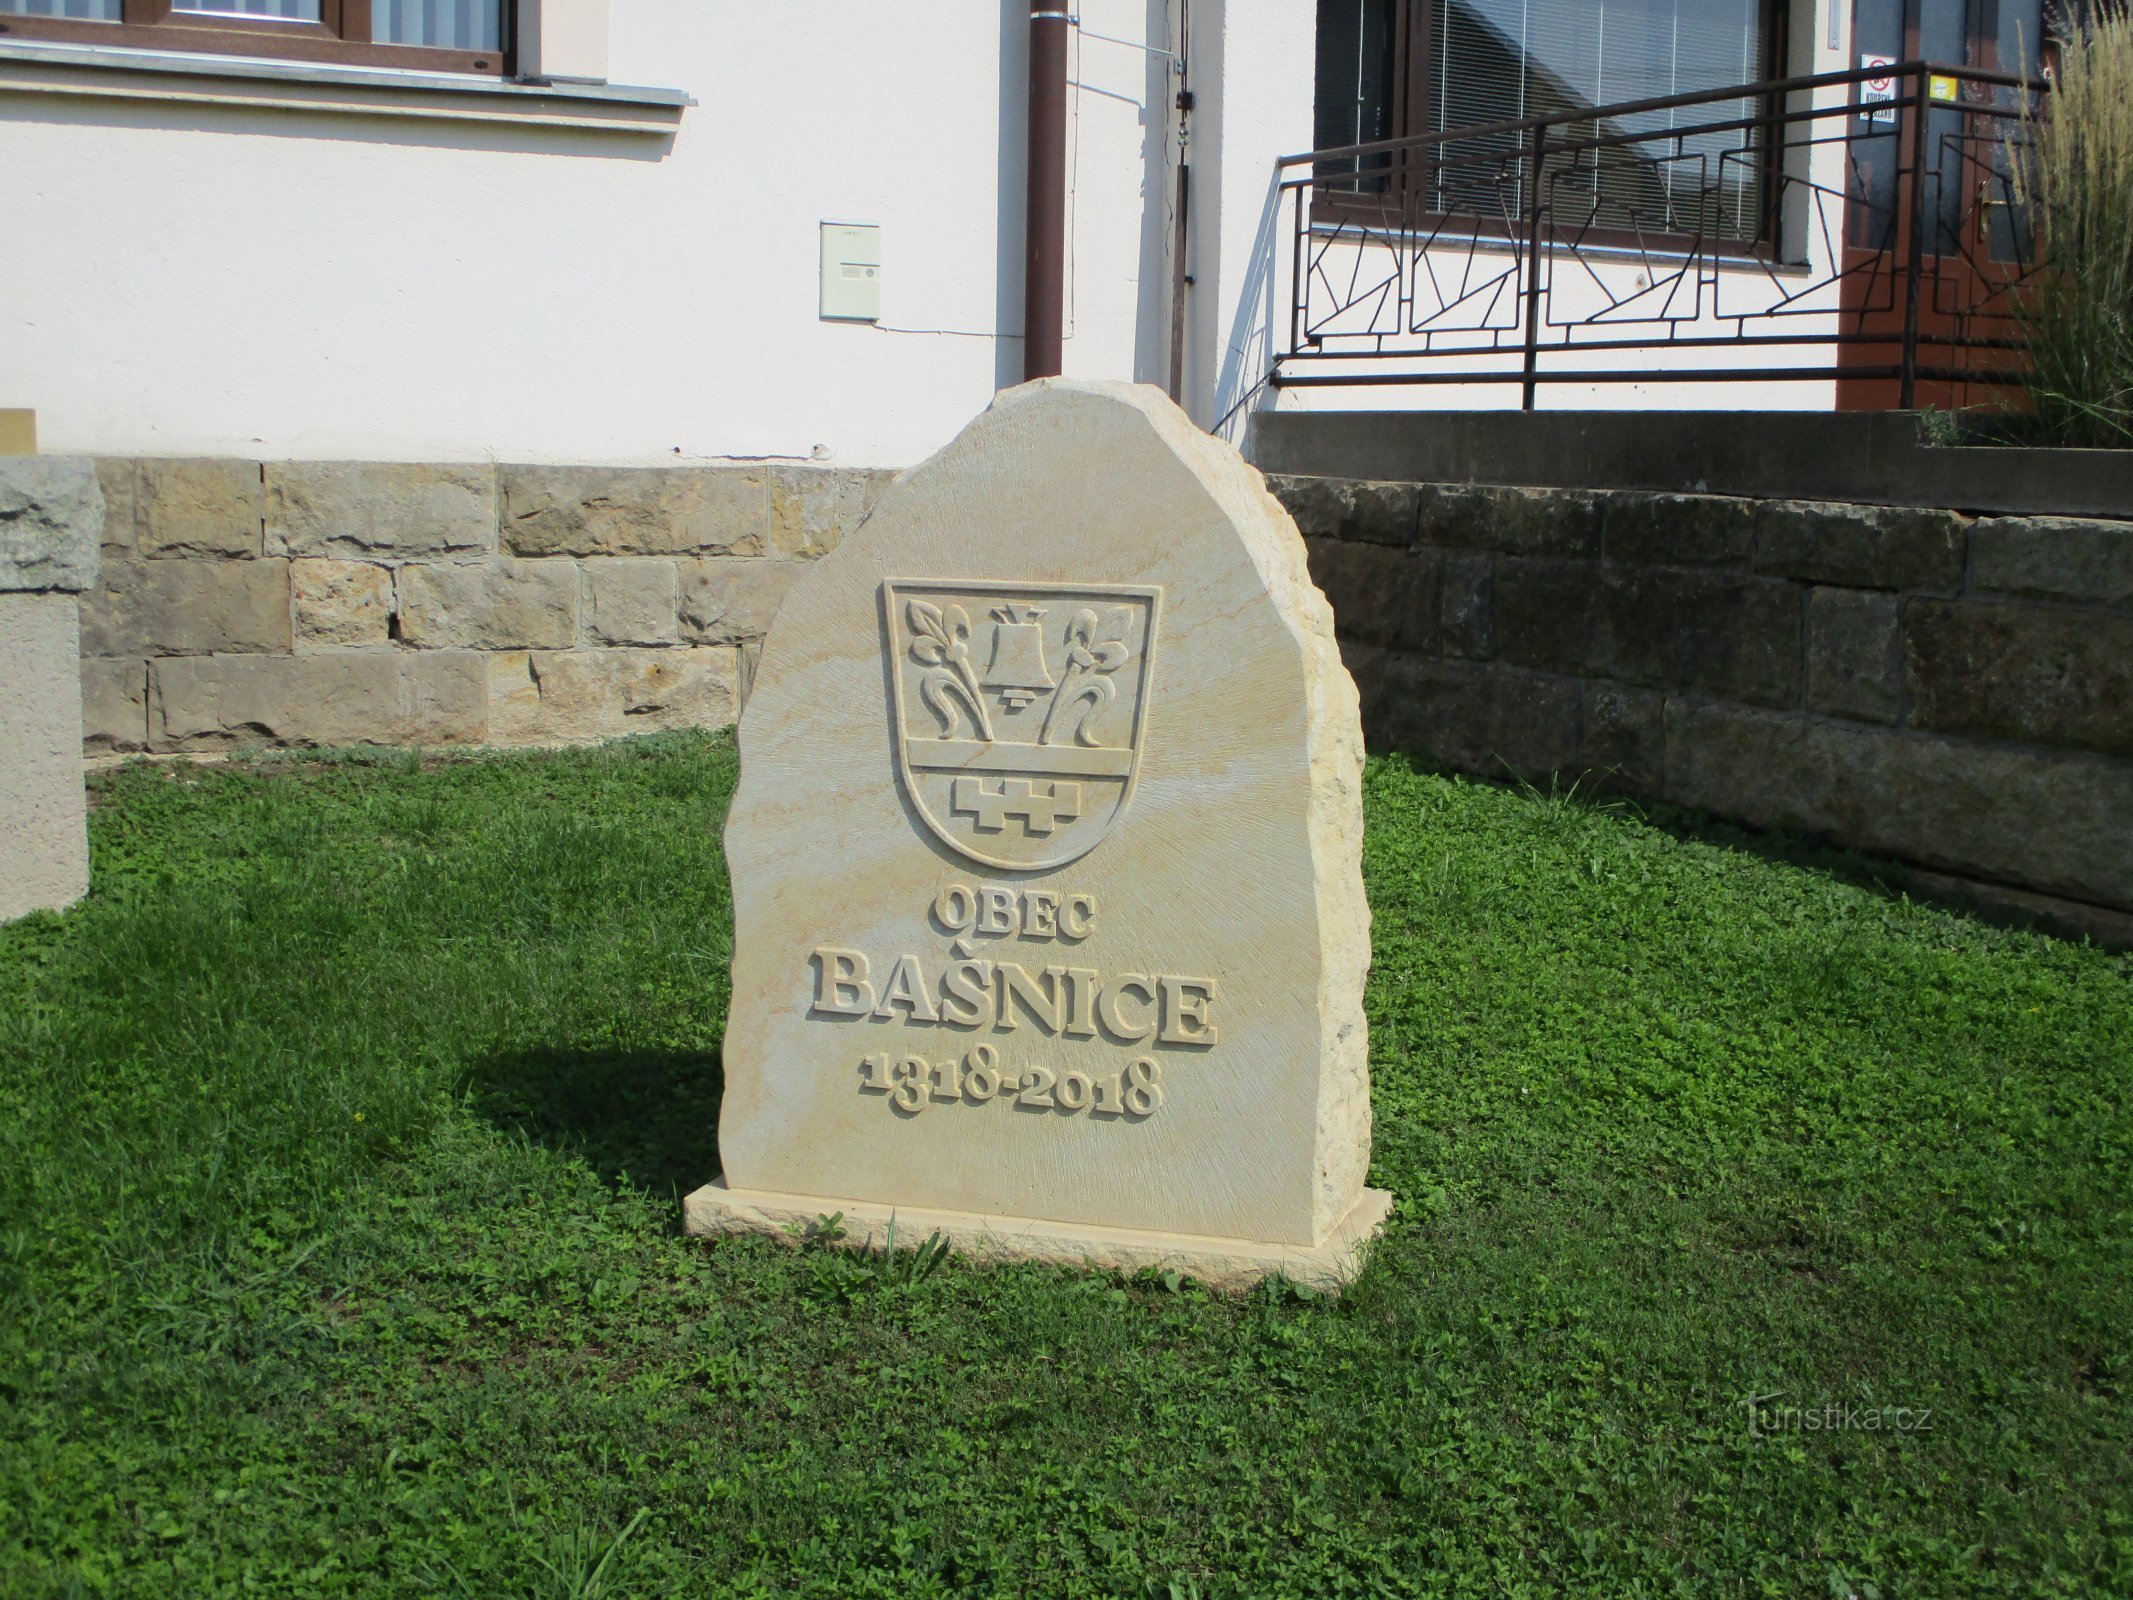 Pomnik 700 lat wsi (Bašnice)